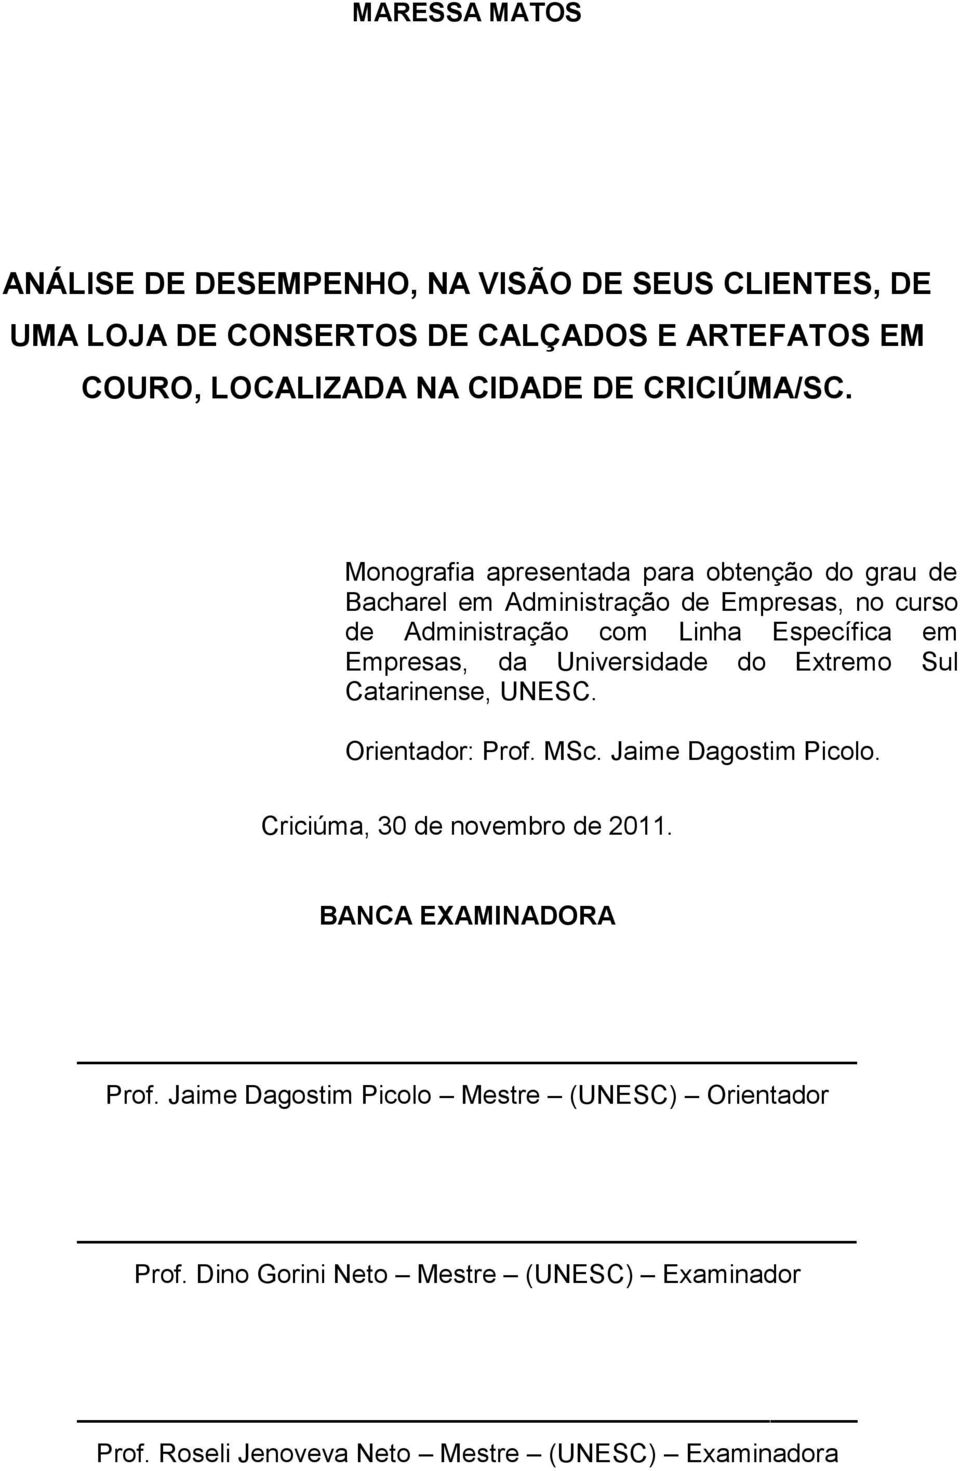 Monografia apresentada para obtenção do grau de Bacharel em Administração de Empresas, no curso de Administração com Linha Específica em Empresas, da